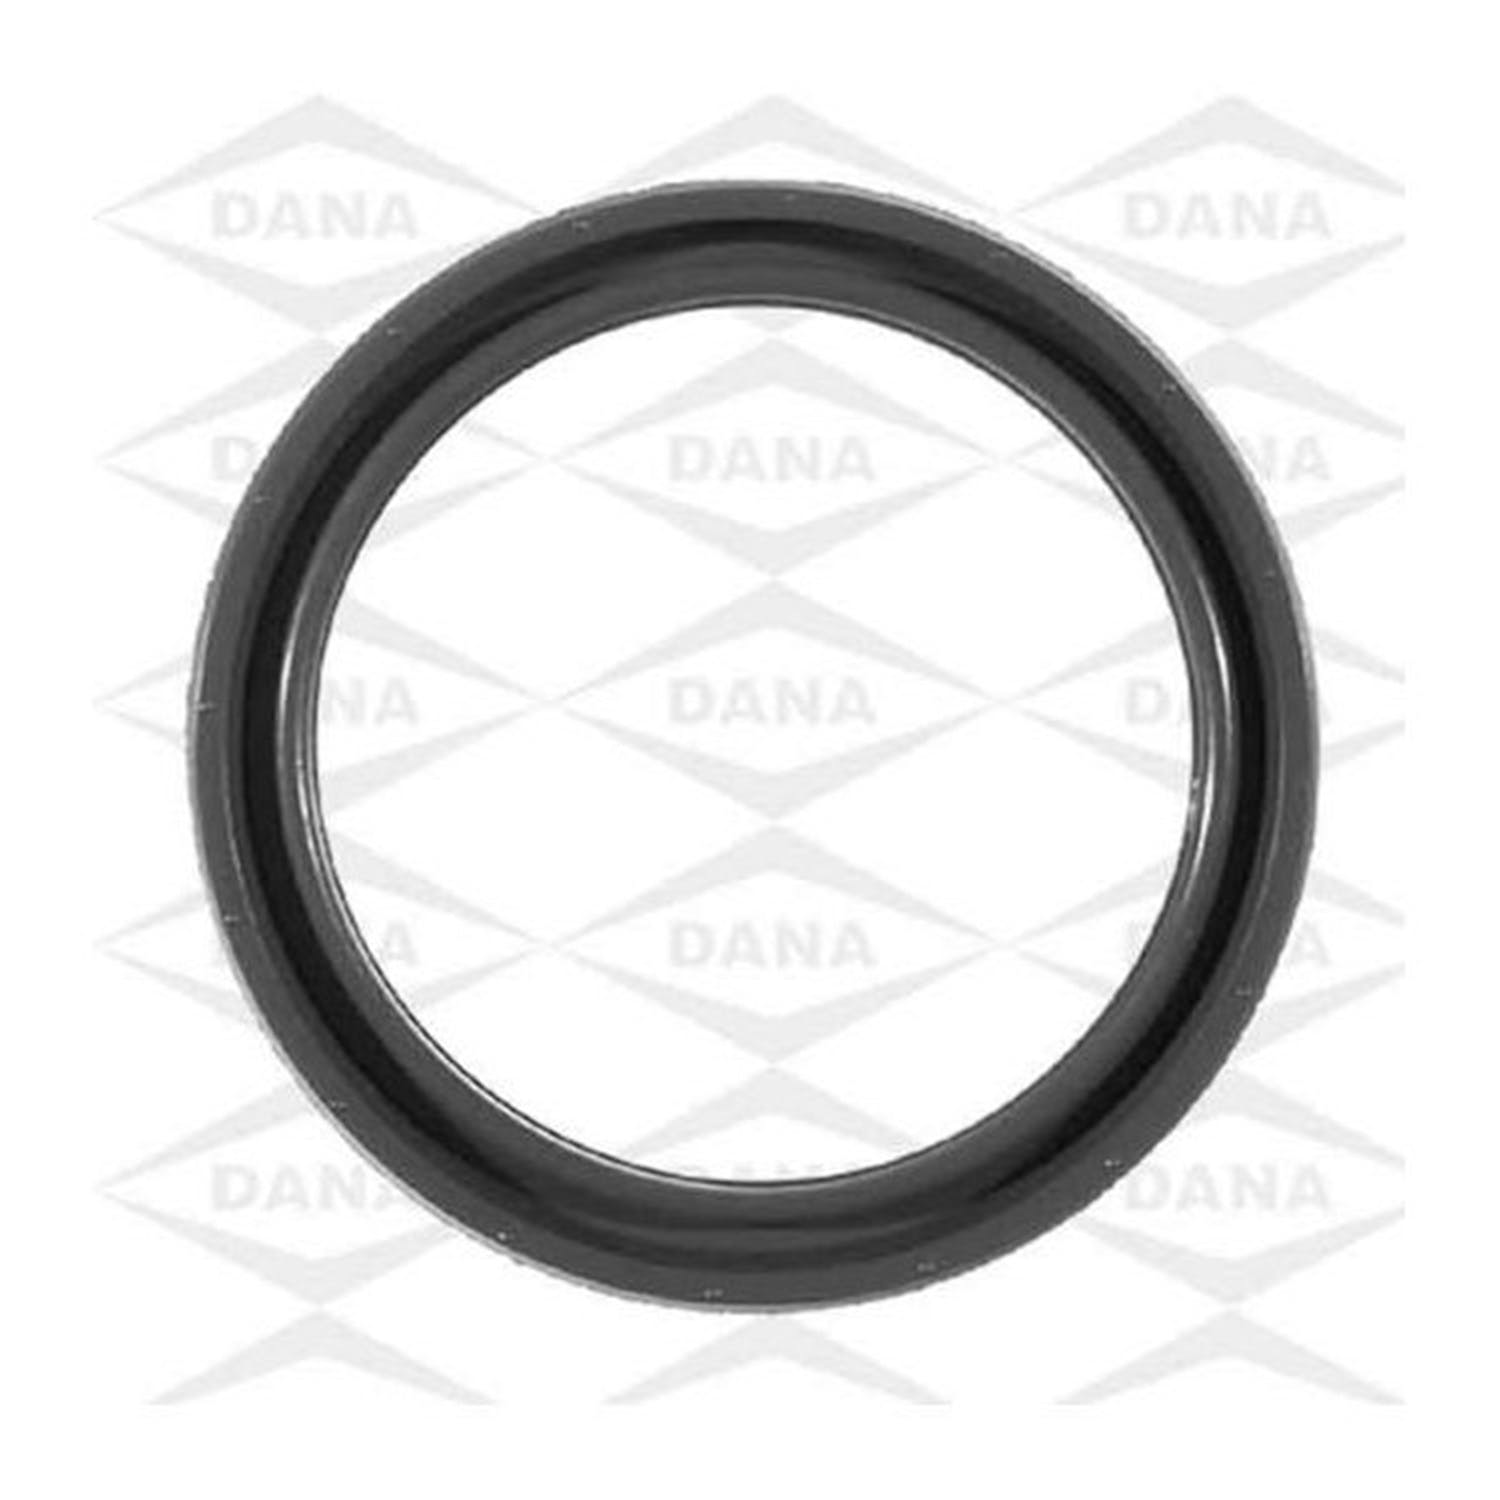 Omix-ADA 17458.02 Crankshaft Oil Seal